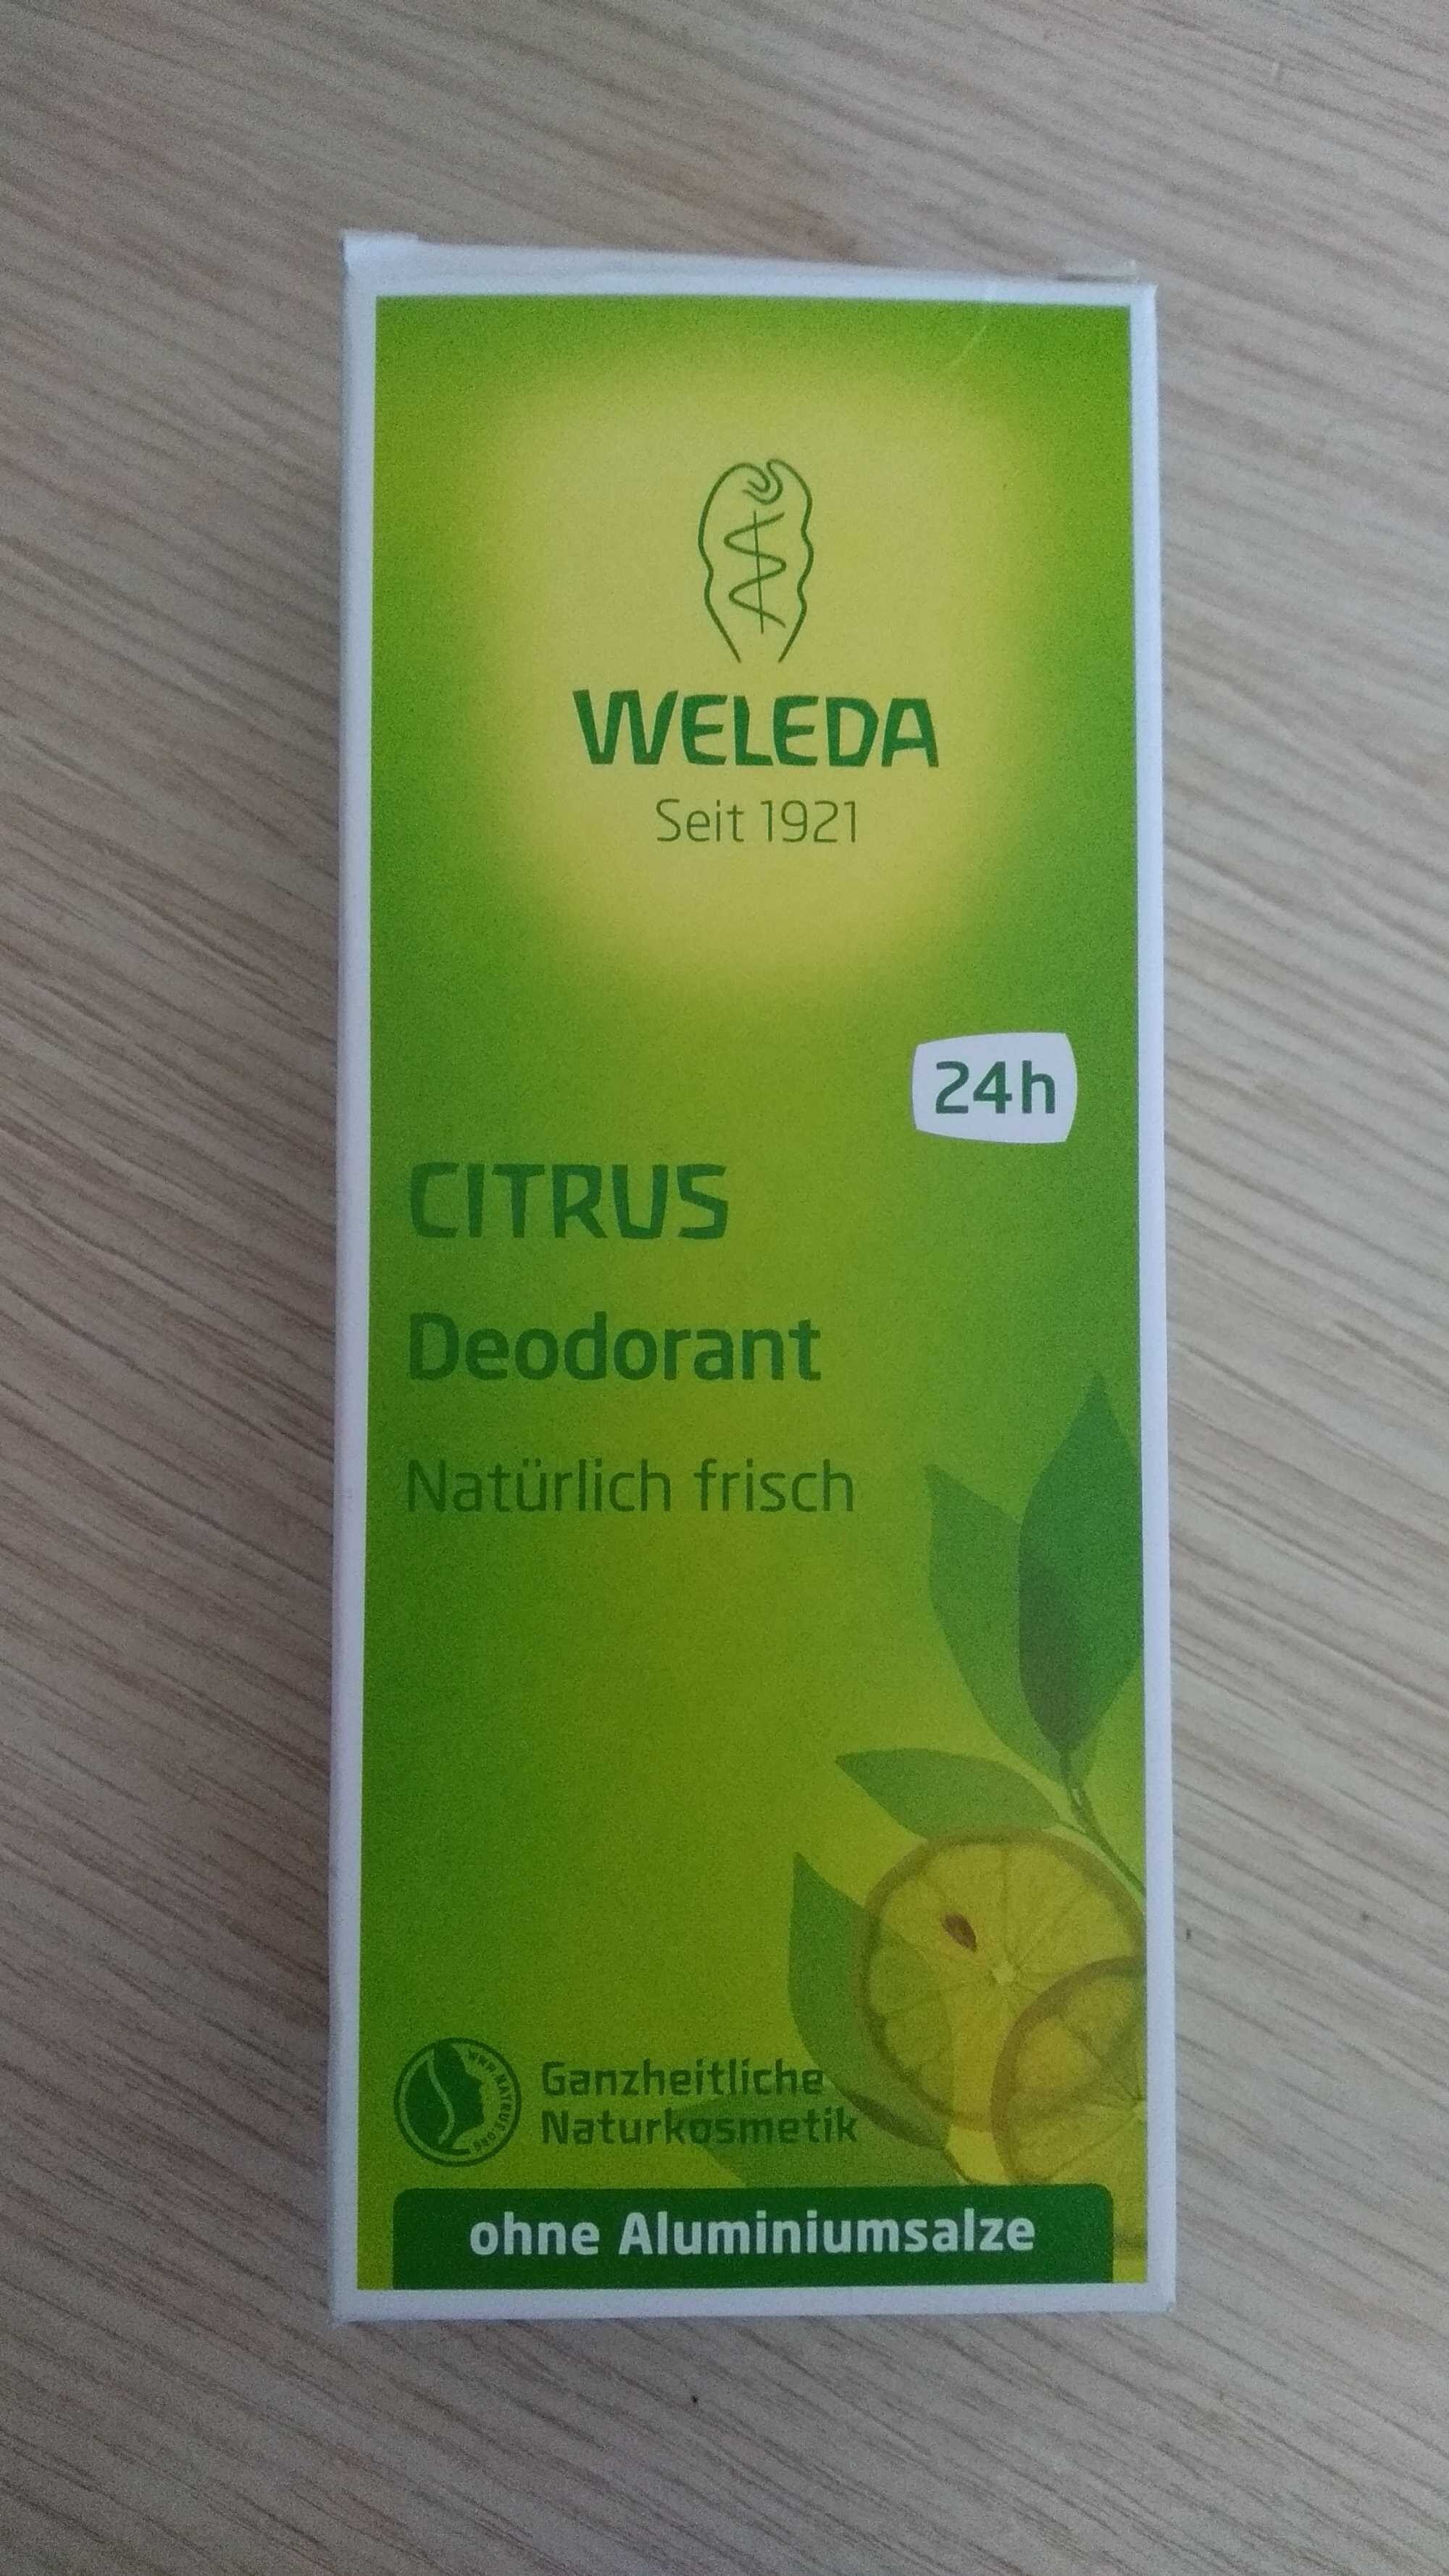 CITRUS Deodorant - Product - fr